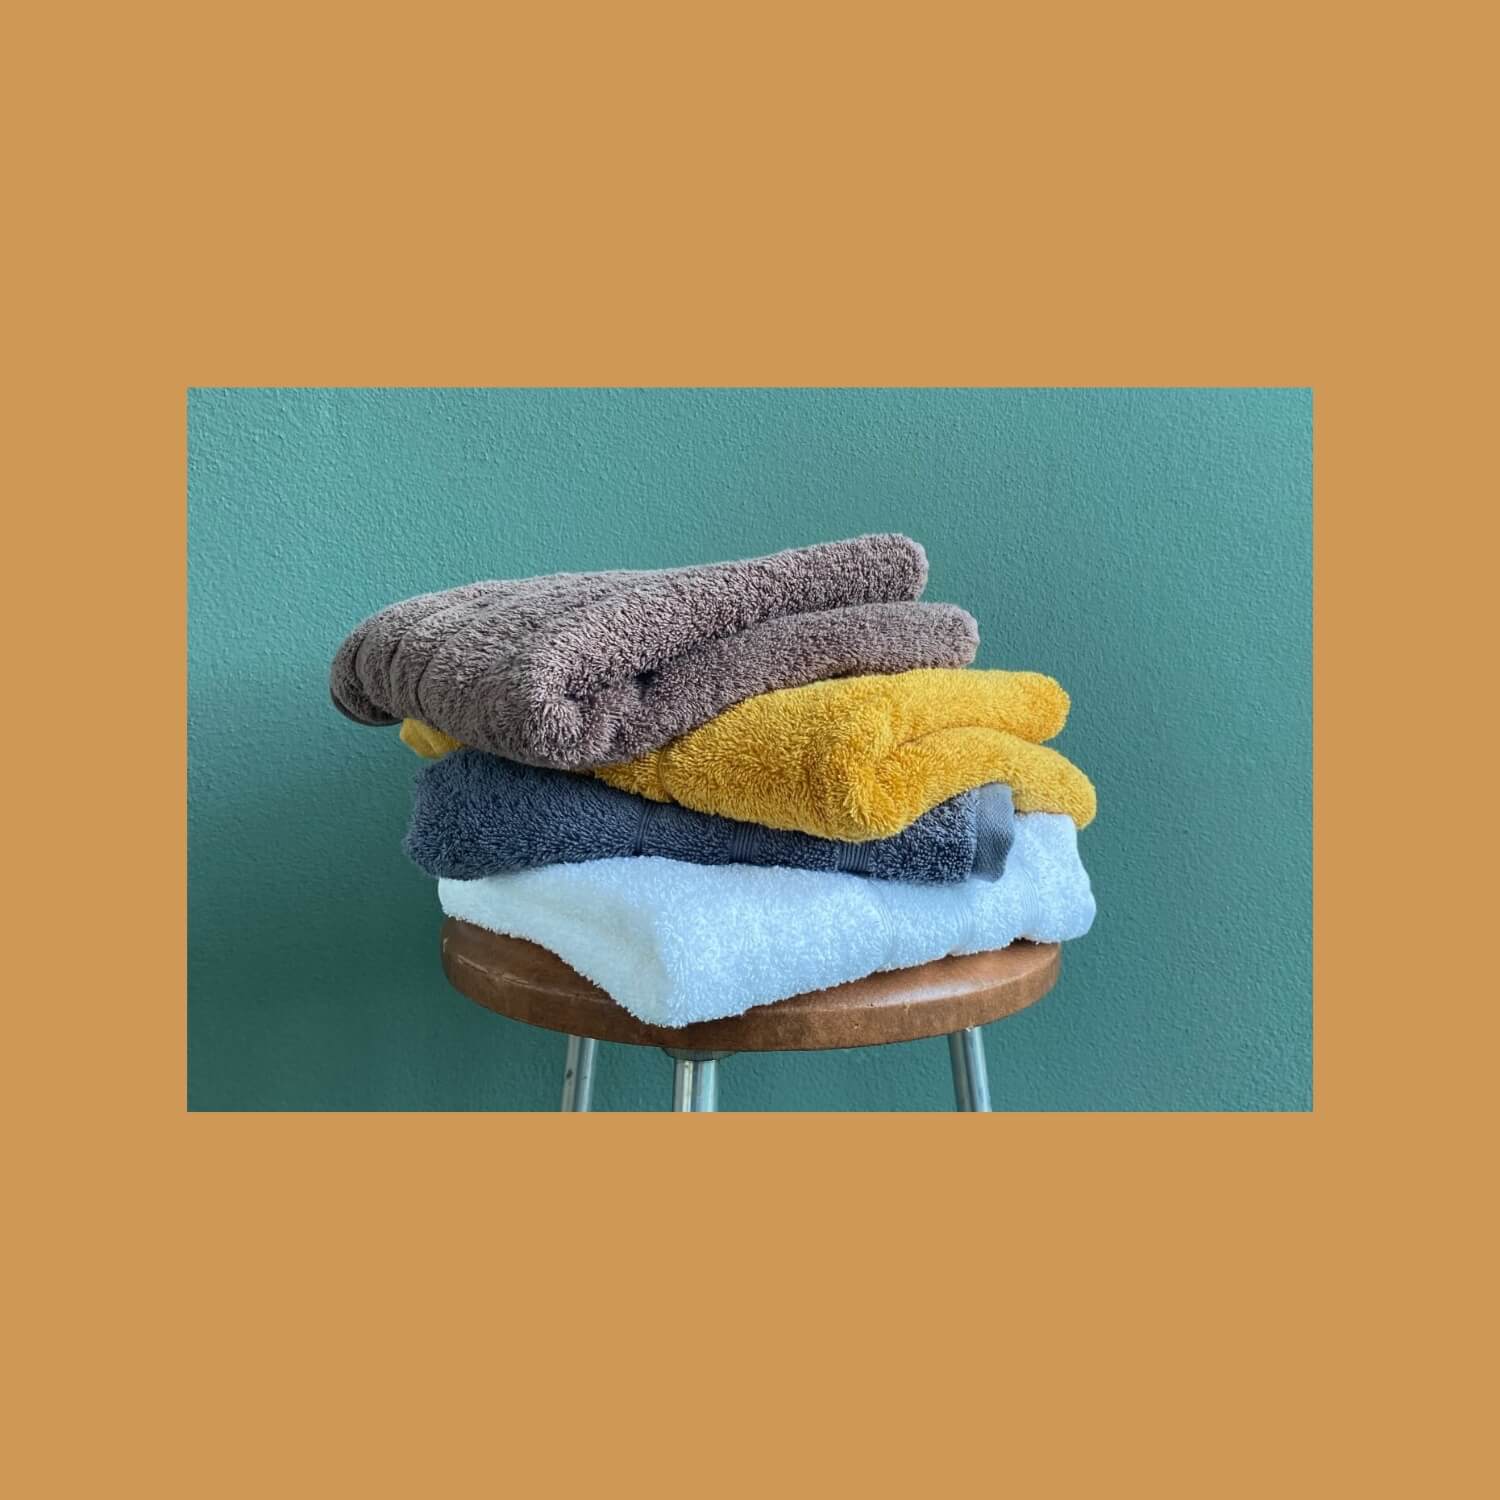 Fire håndklæder stablet oven på en skammel. Farverne er mørkebrun, karrygul, gråblå og havblå.